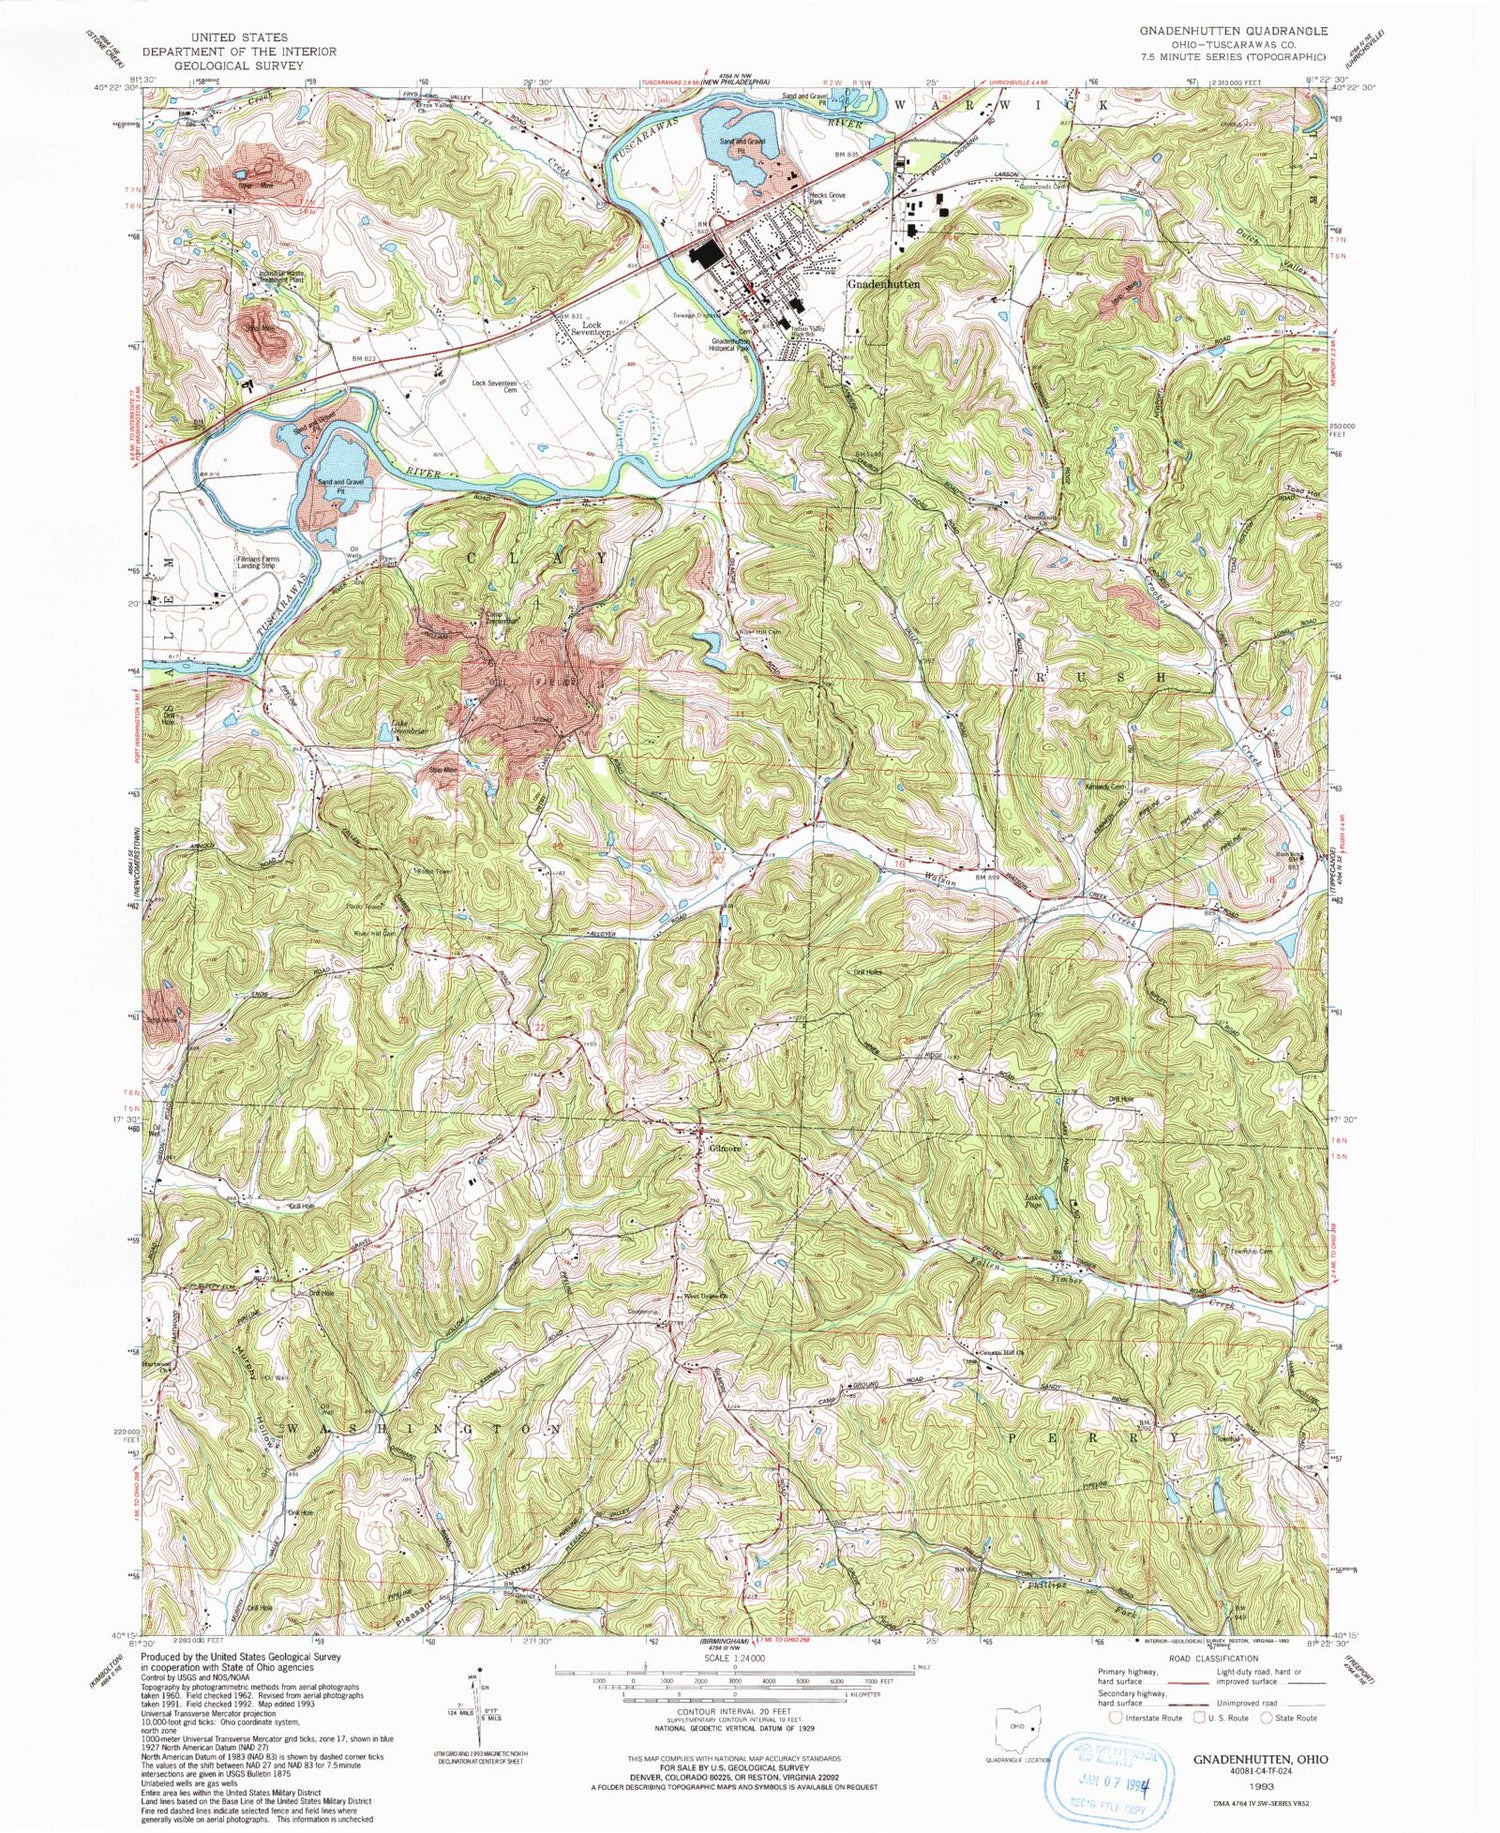 Classic USGS Gnadenhutten Ohio 7.5'x7.5' Topo Map Image